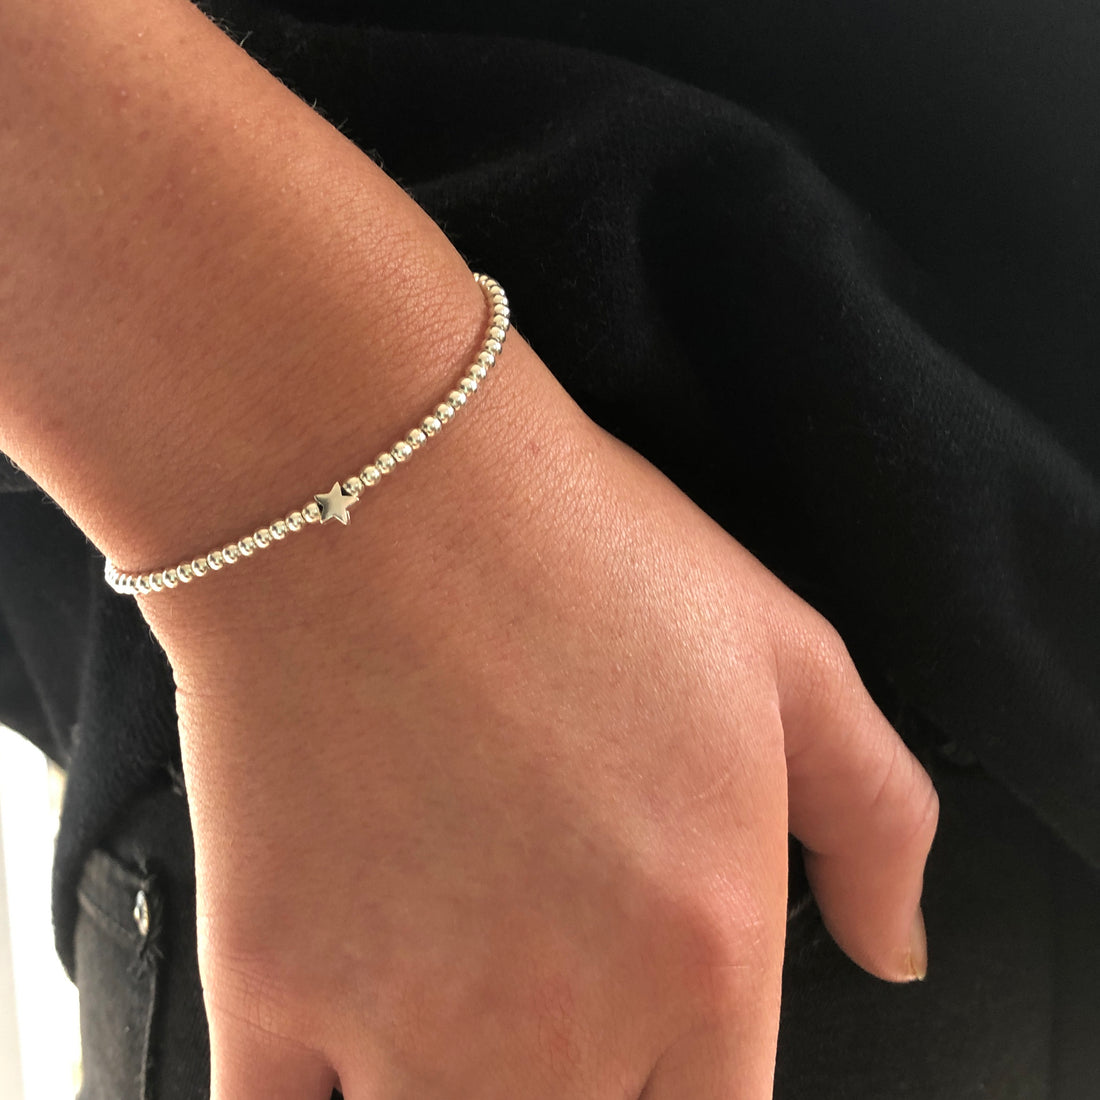 My star knot design friendship bracelets - Etsy Shop SimplyPut18